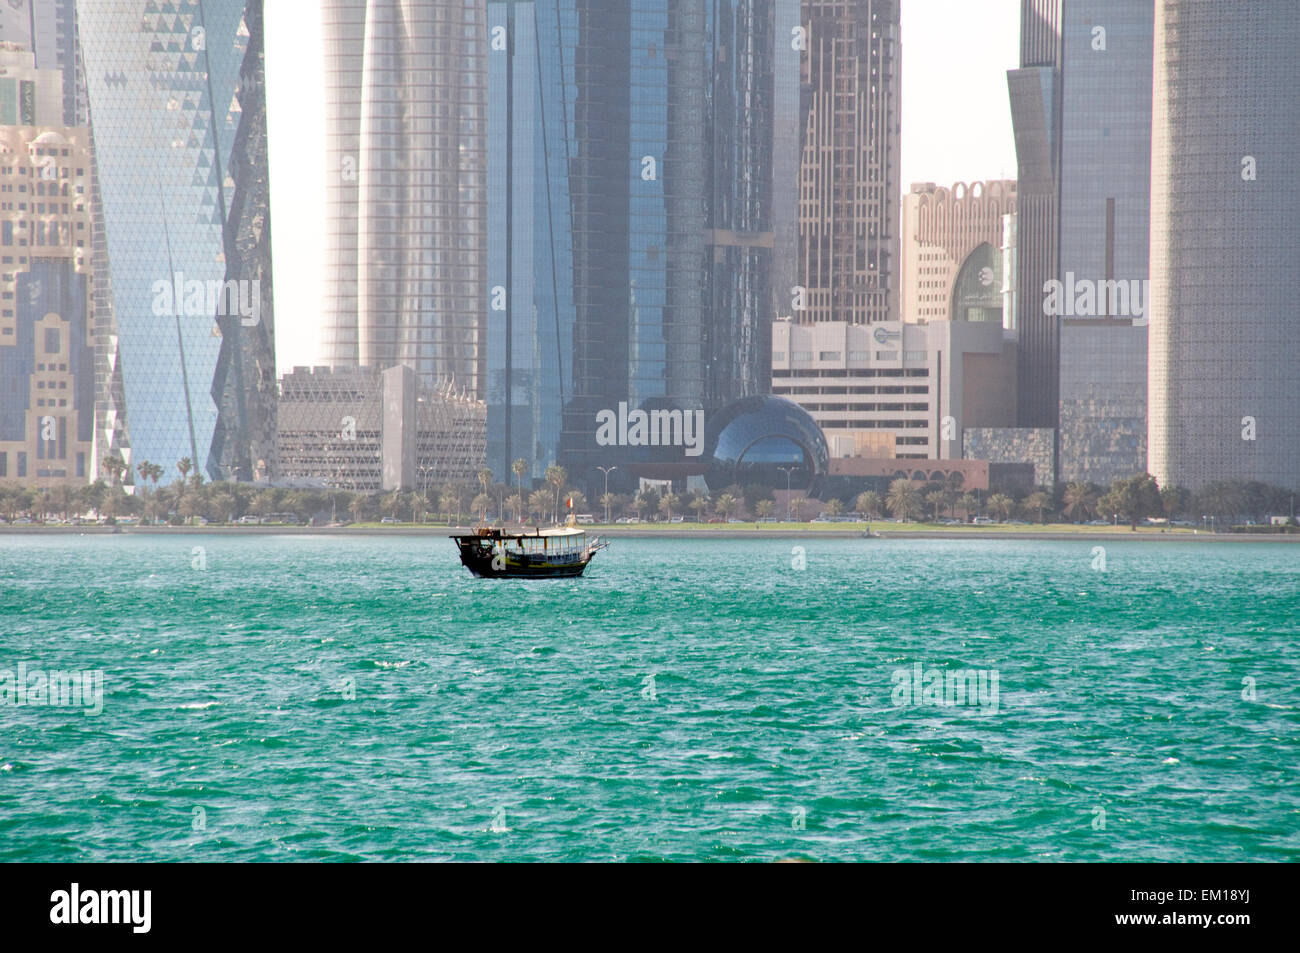 Una embarcación dhow arados las aguas del Golfo Arábigo, cerca de la ciudad de Doha, la capital de la nación del Golfo de Qatar. Foto de stock